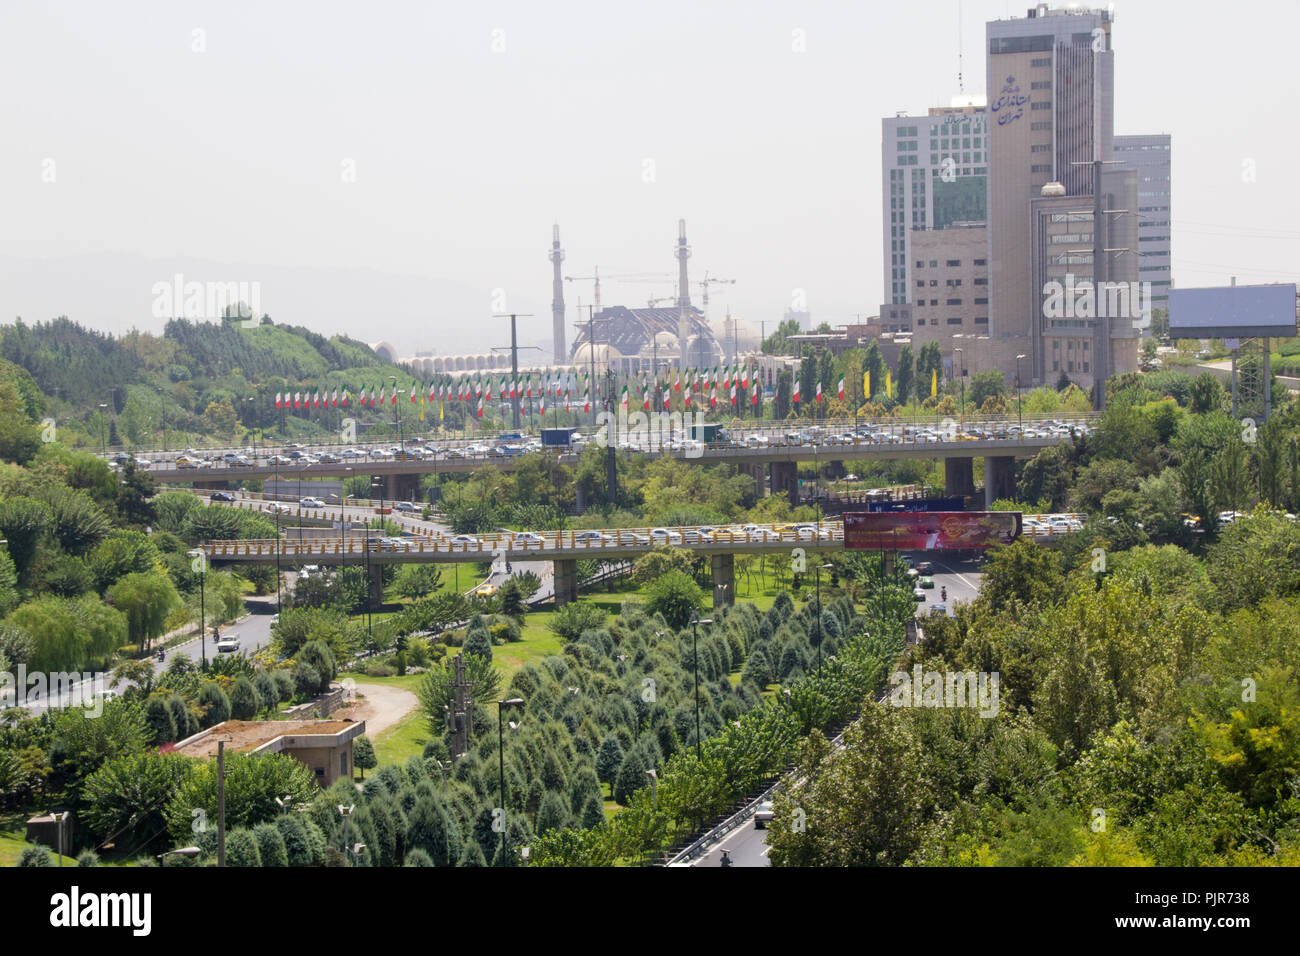 Ariel Foto für Teheran Stadt in der Islamischen Republik Iran, der Straßen und Gebäude zeigen und einige Autos und einigen Bäumen. Stockfoto